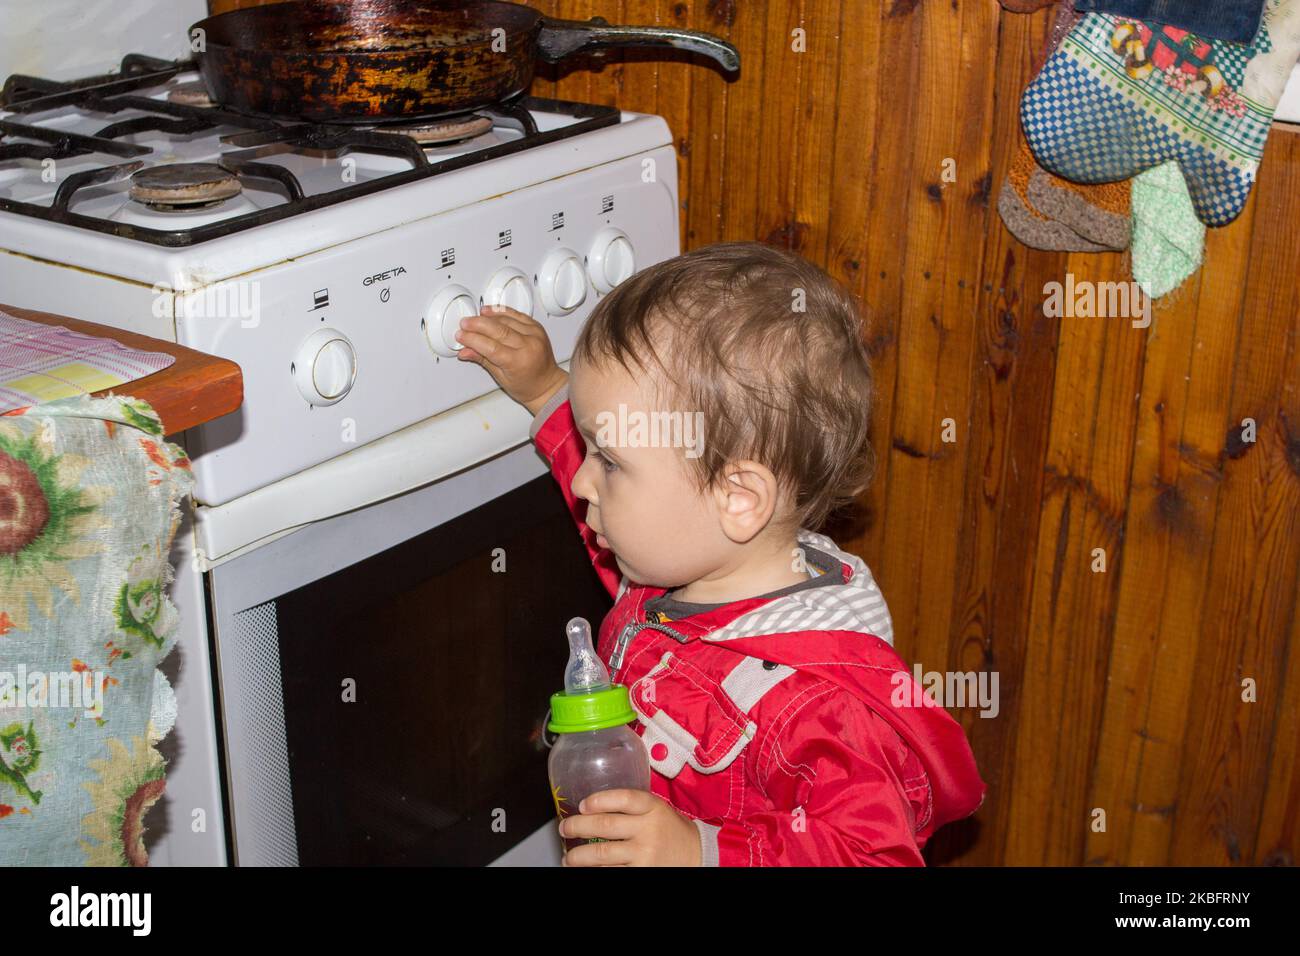 El niño solo juega en la cocina con una estufa de gas. Foto de stock